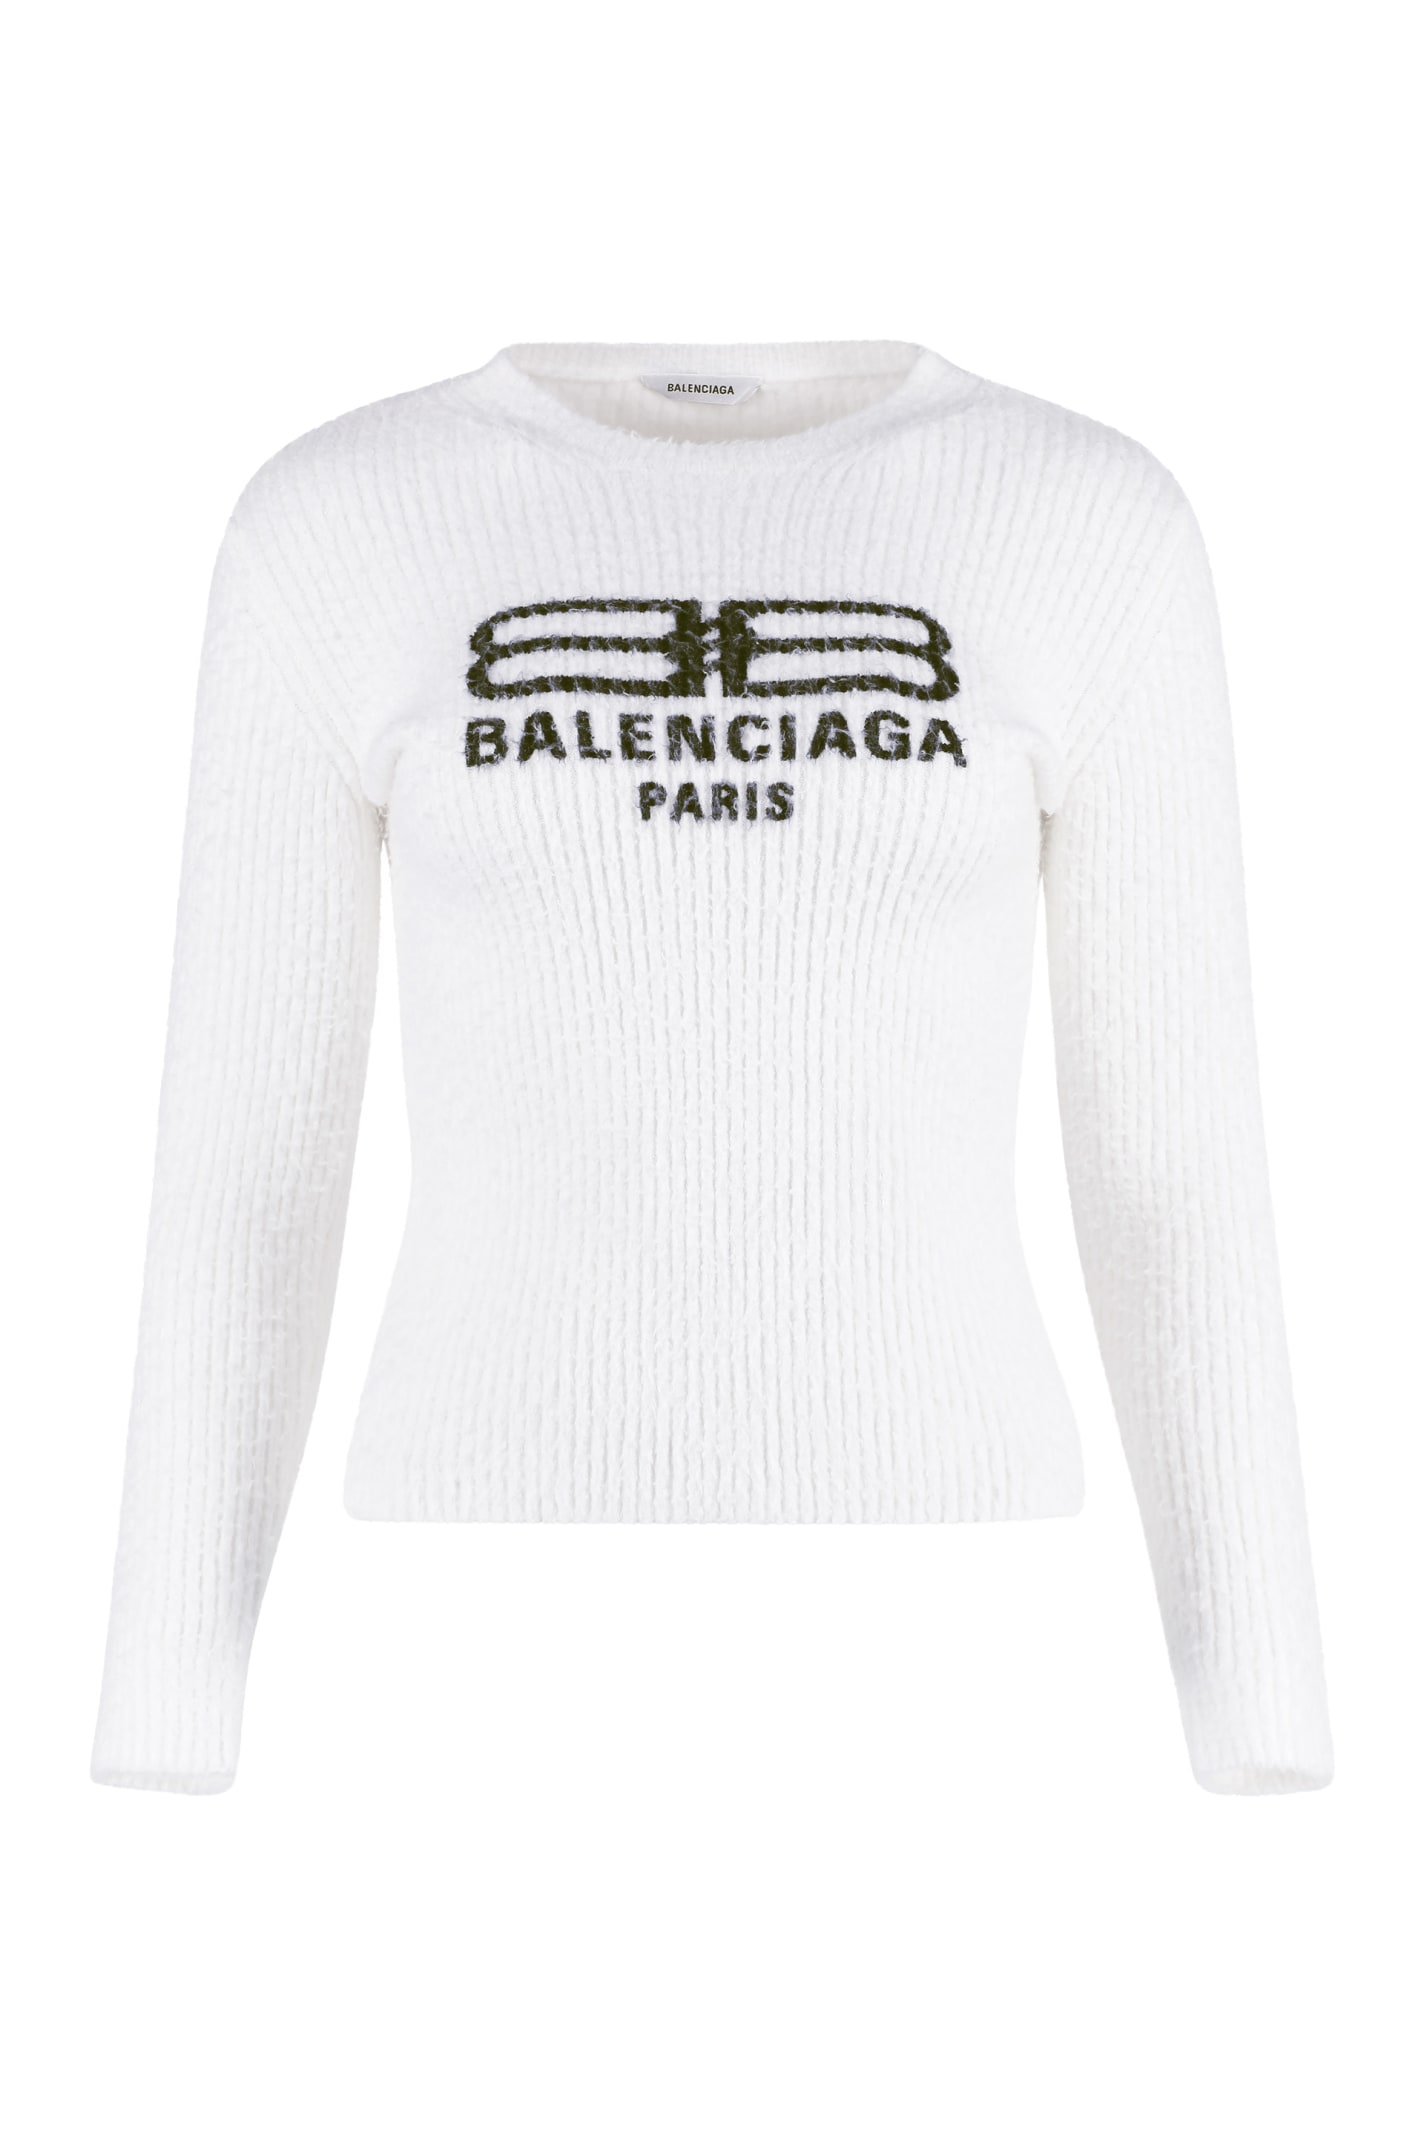 Balenciaga Long Sleeve Crew-neck Sweater